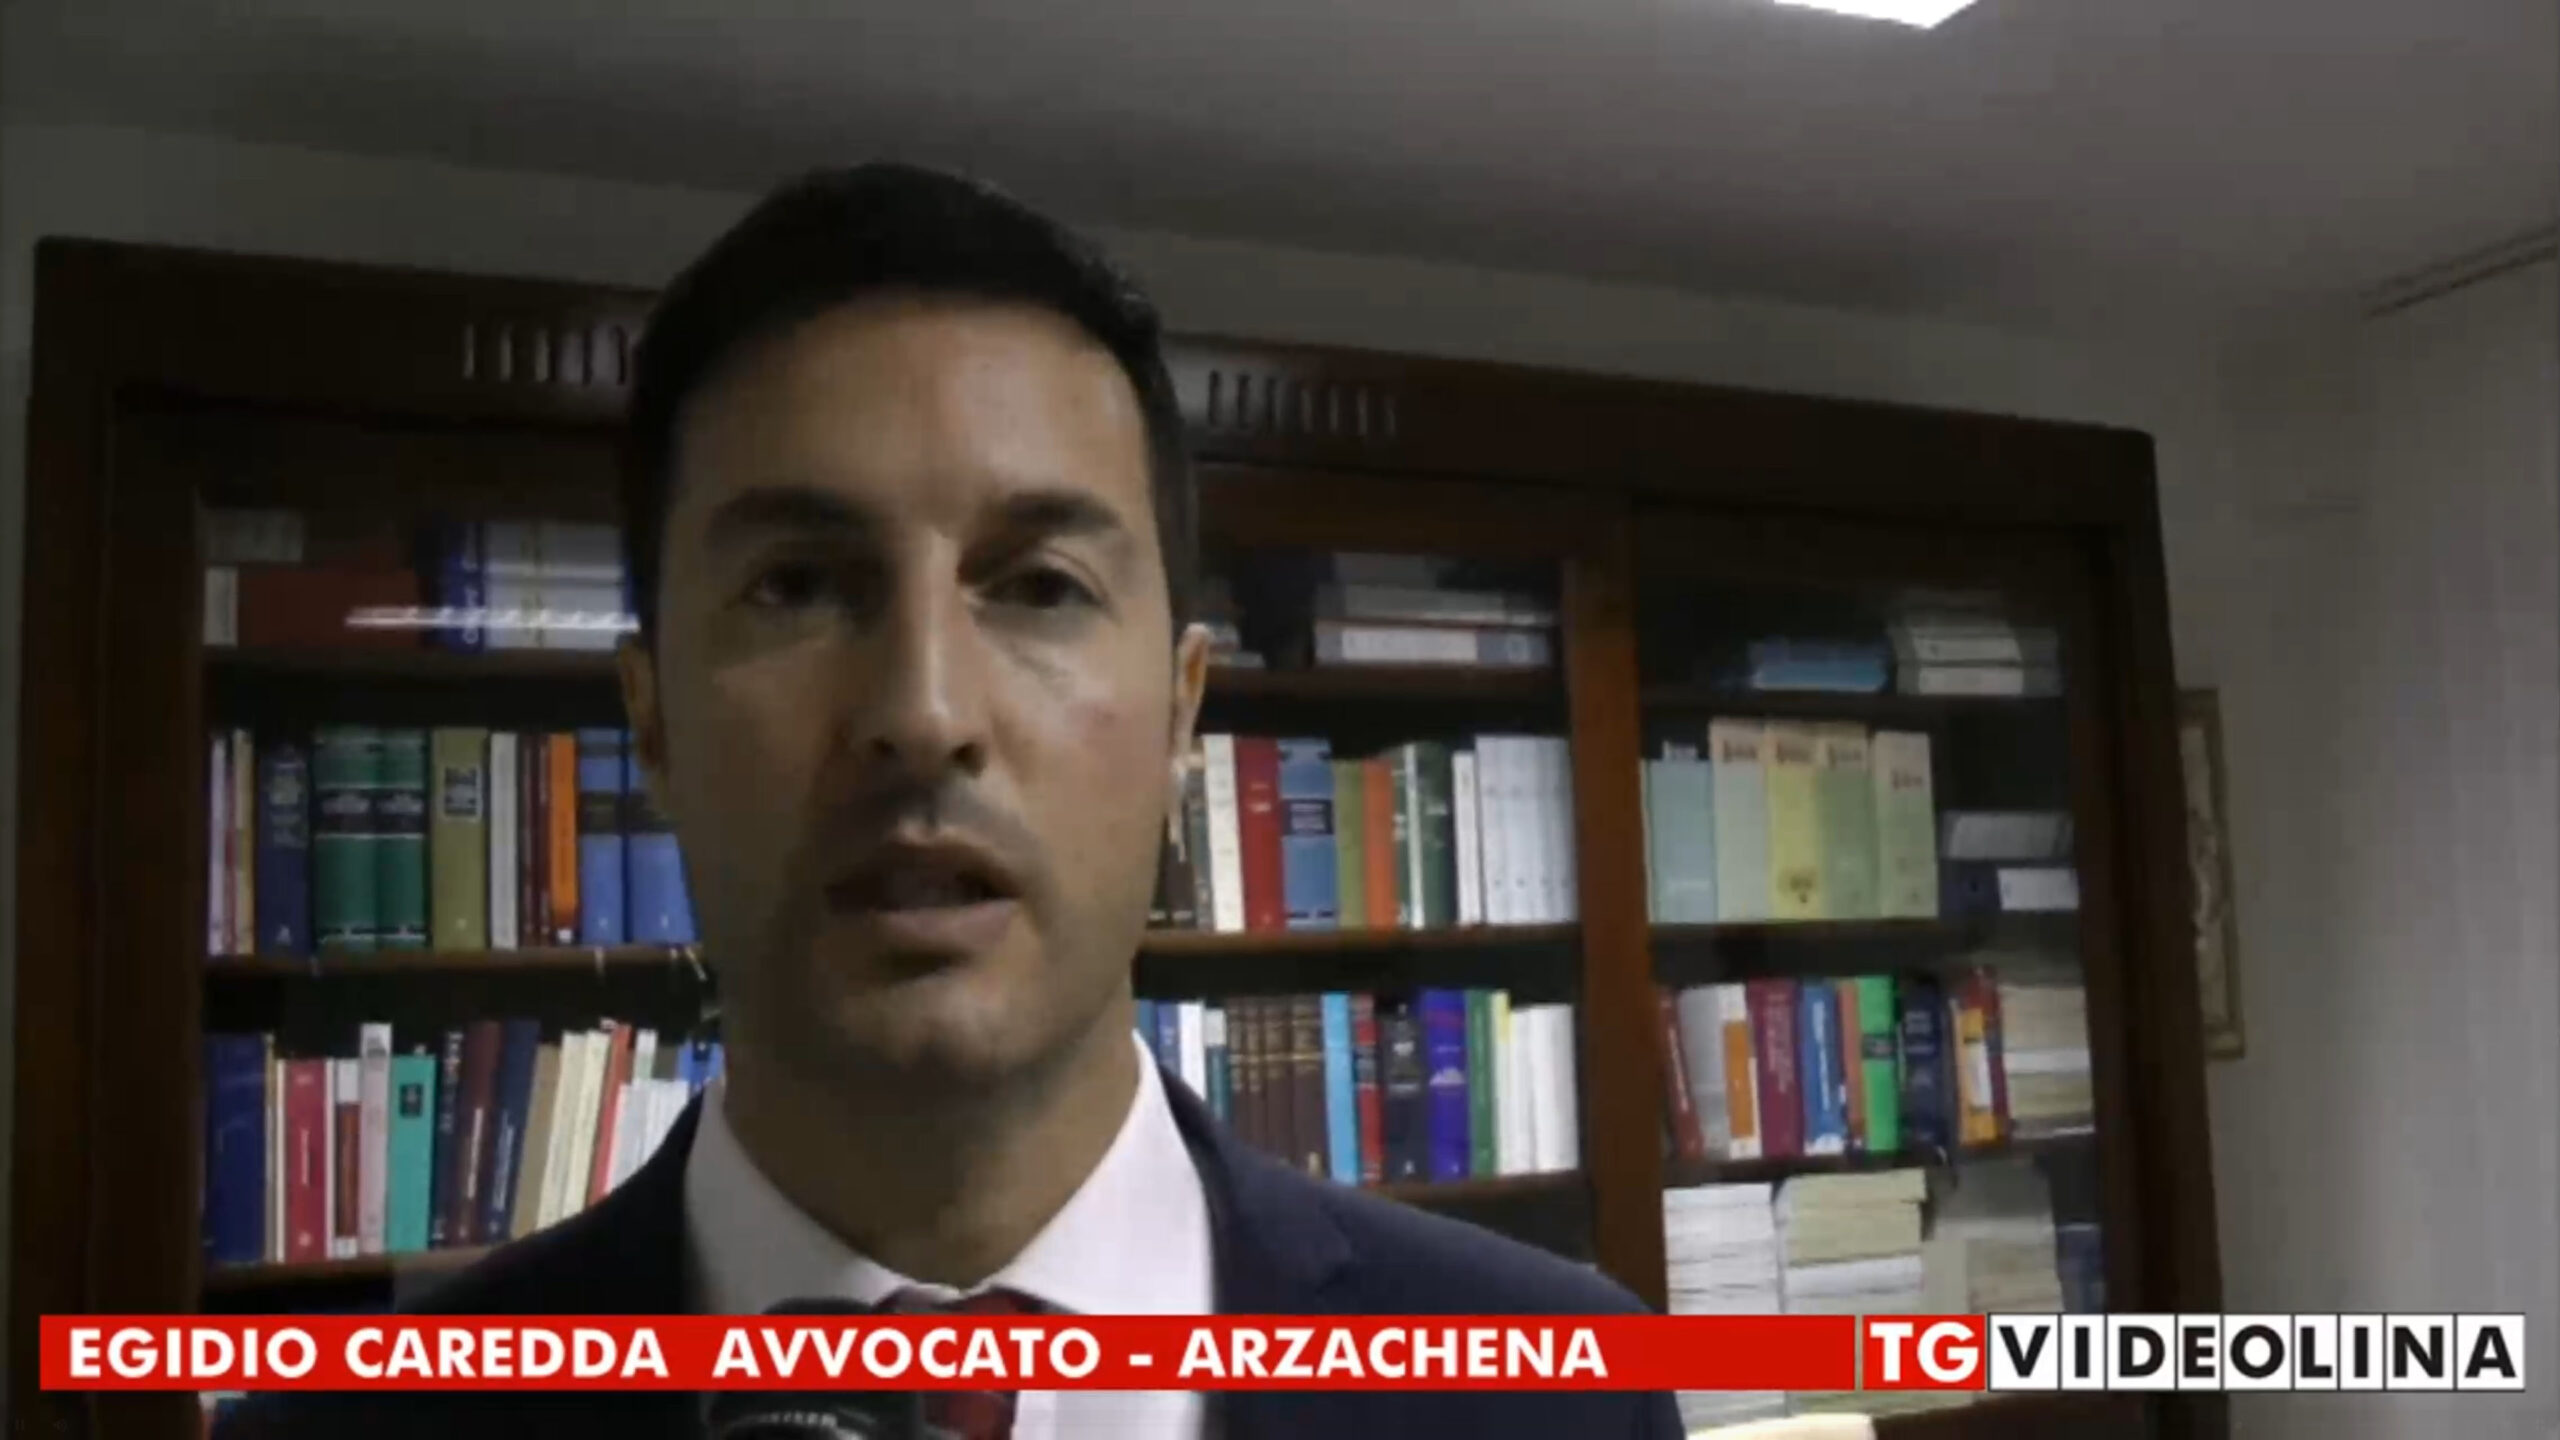 Avvocato Egidio Caredda intervistato a Videolina